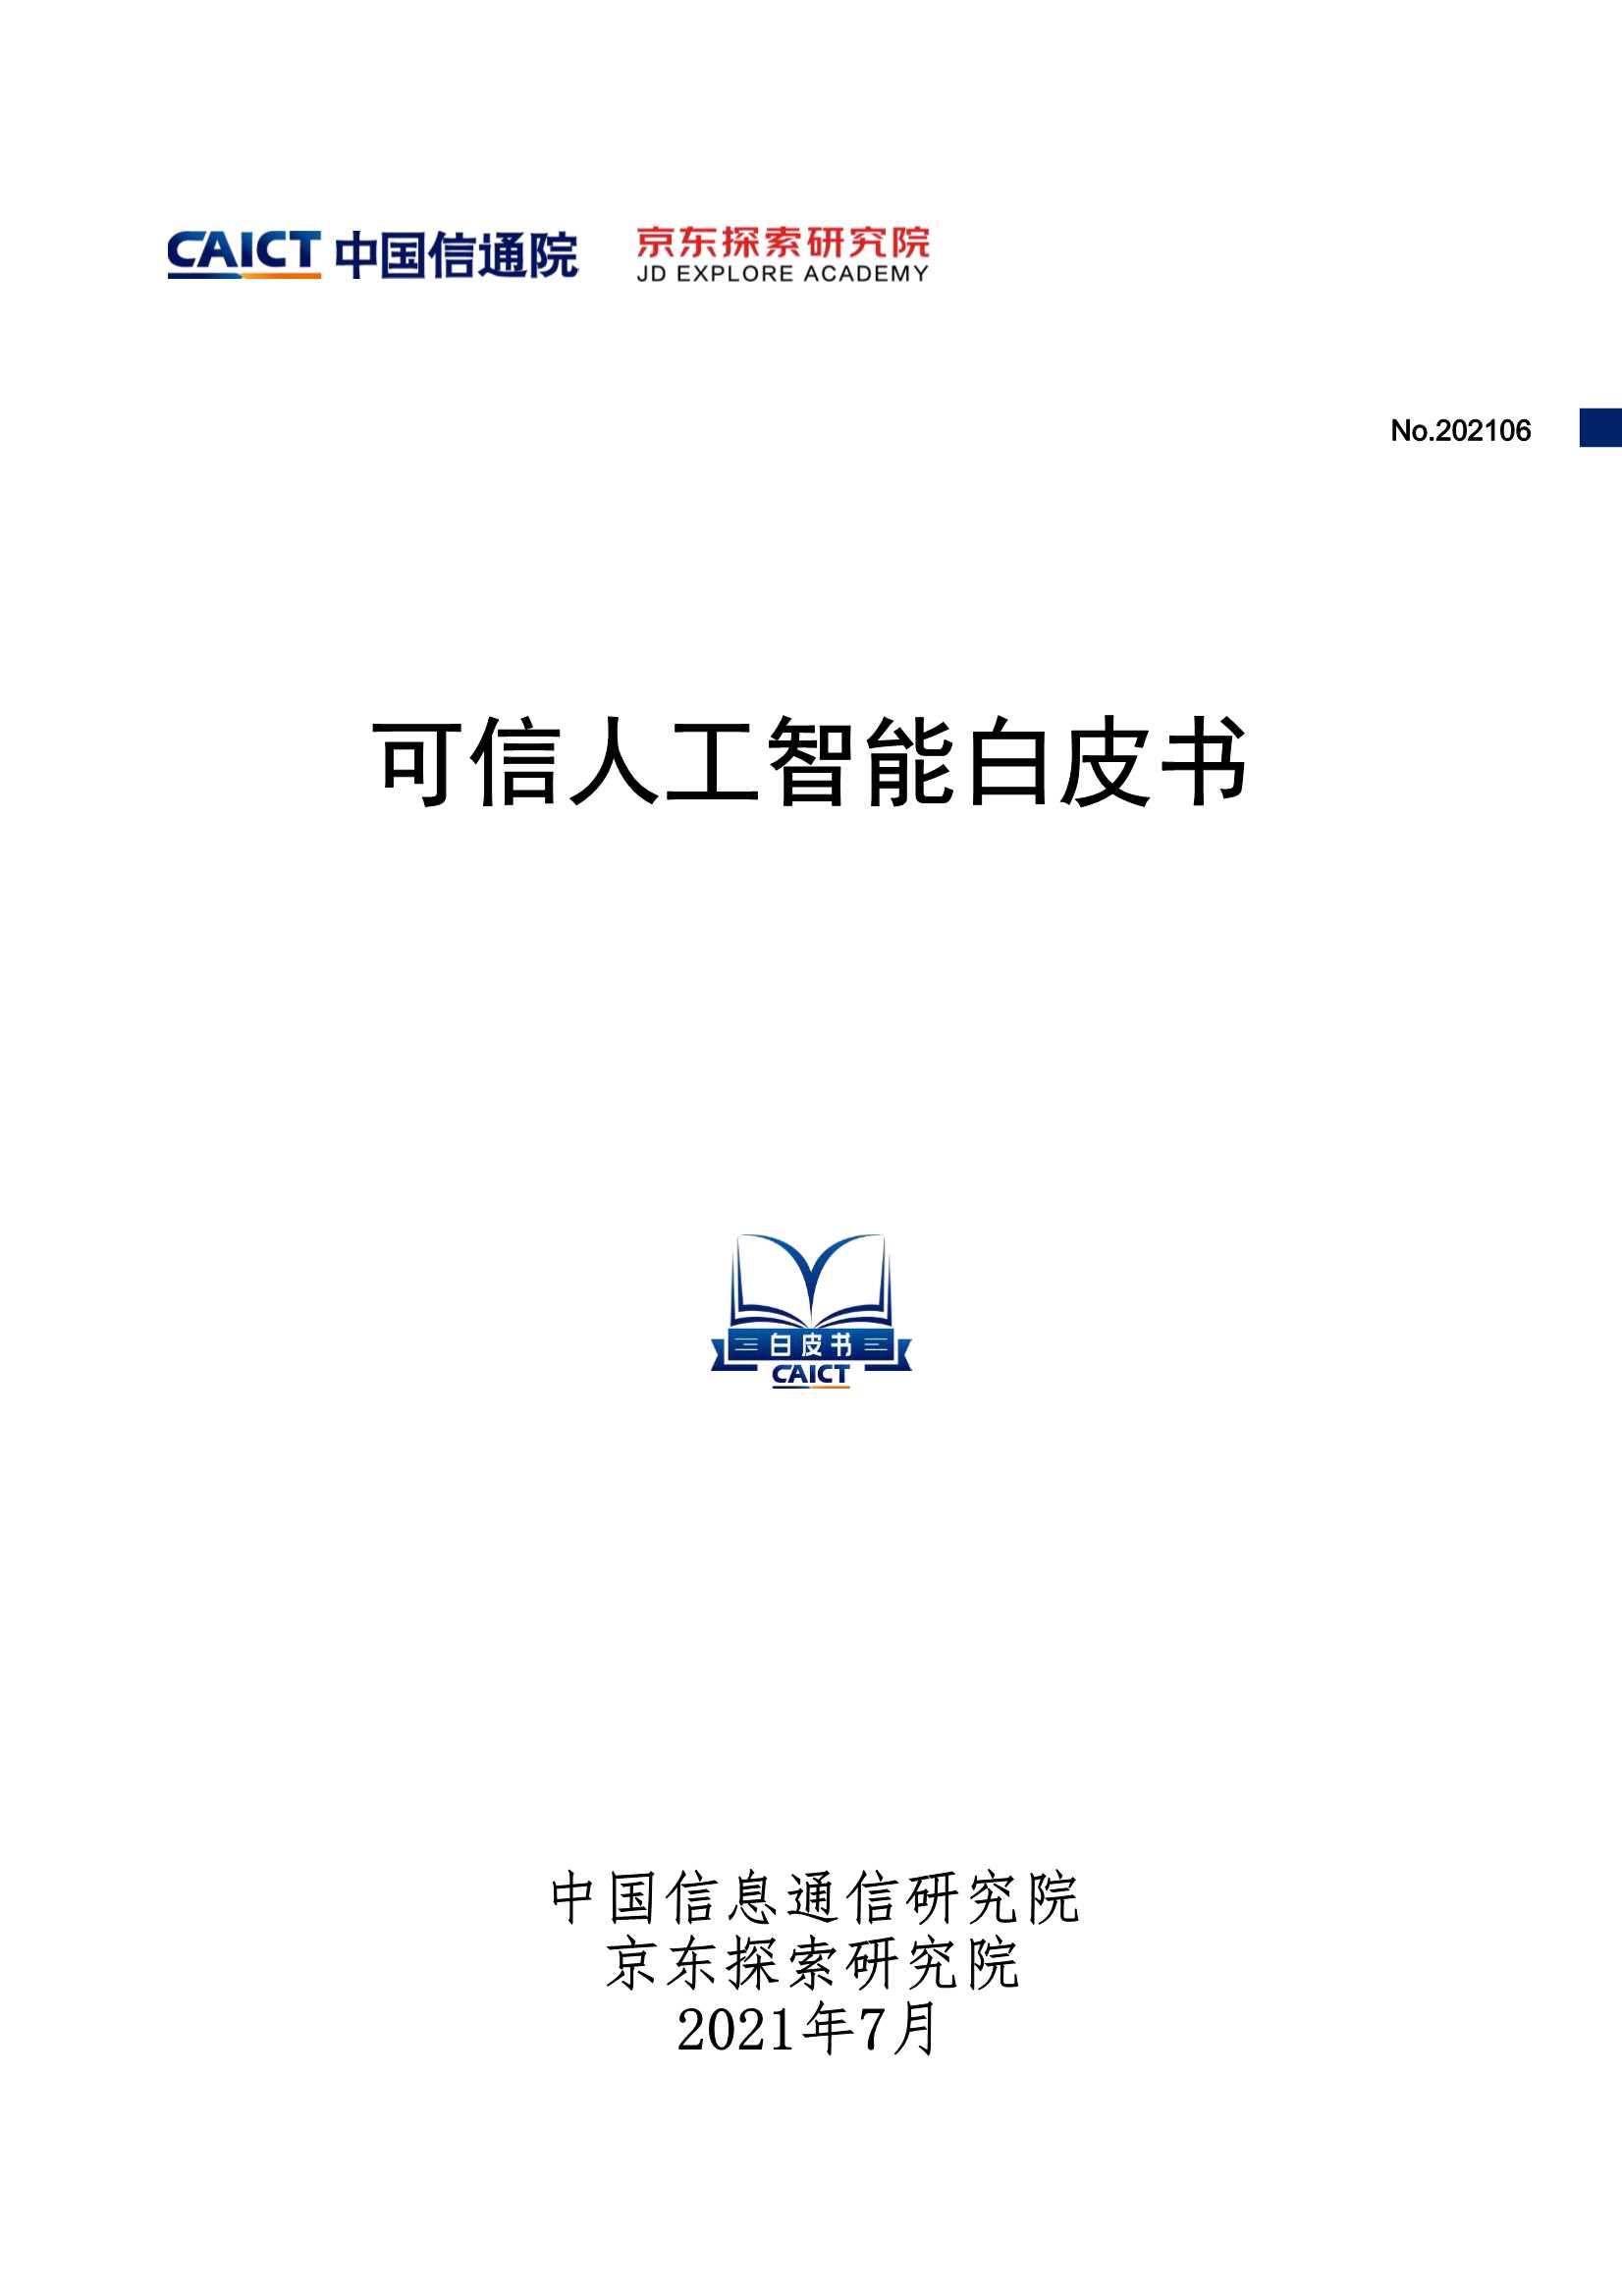 中国信通院&京东探索研究院-可信人工智能白皮书-2021.07-39页